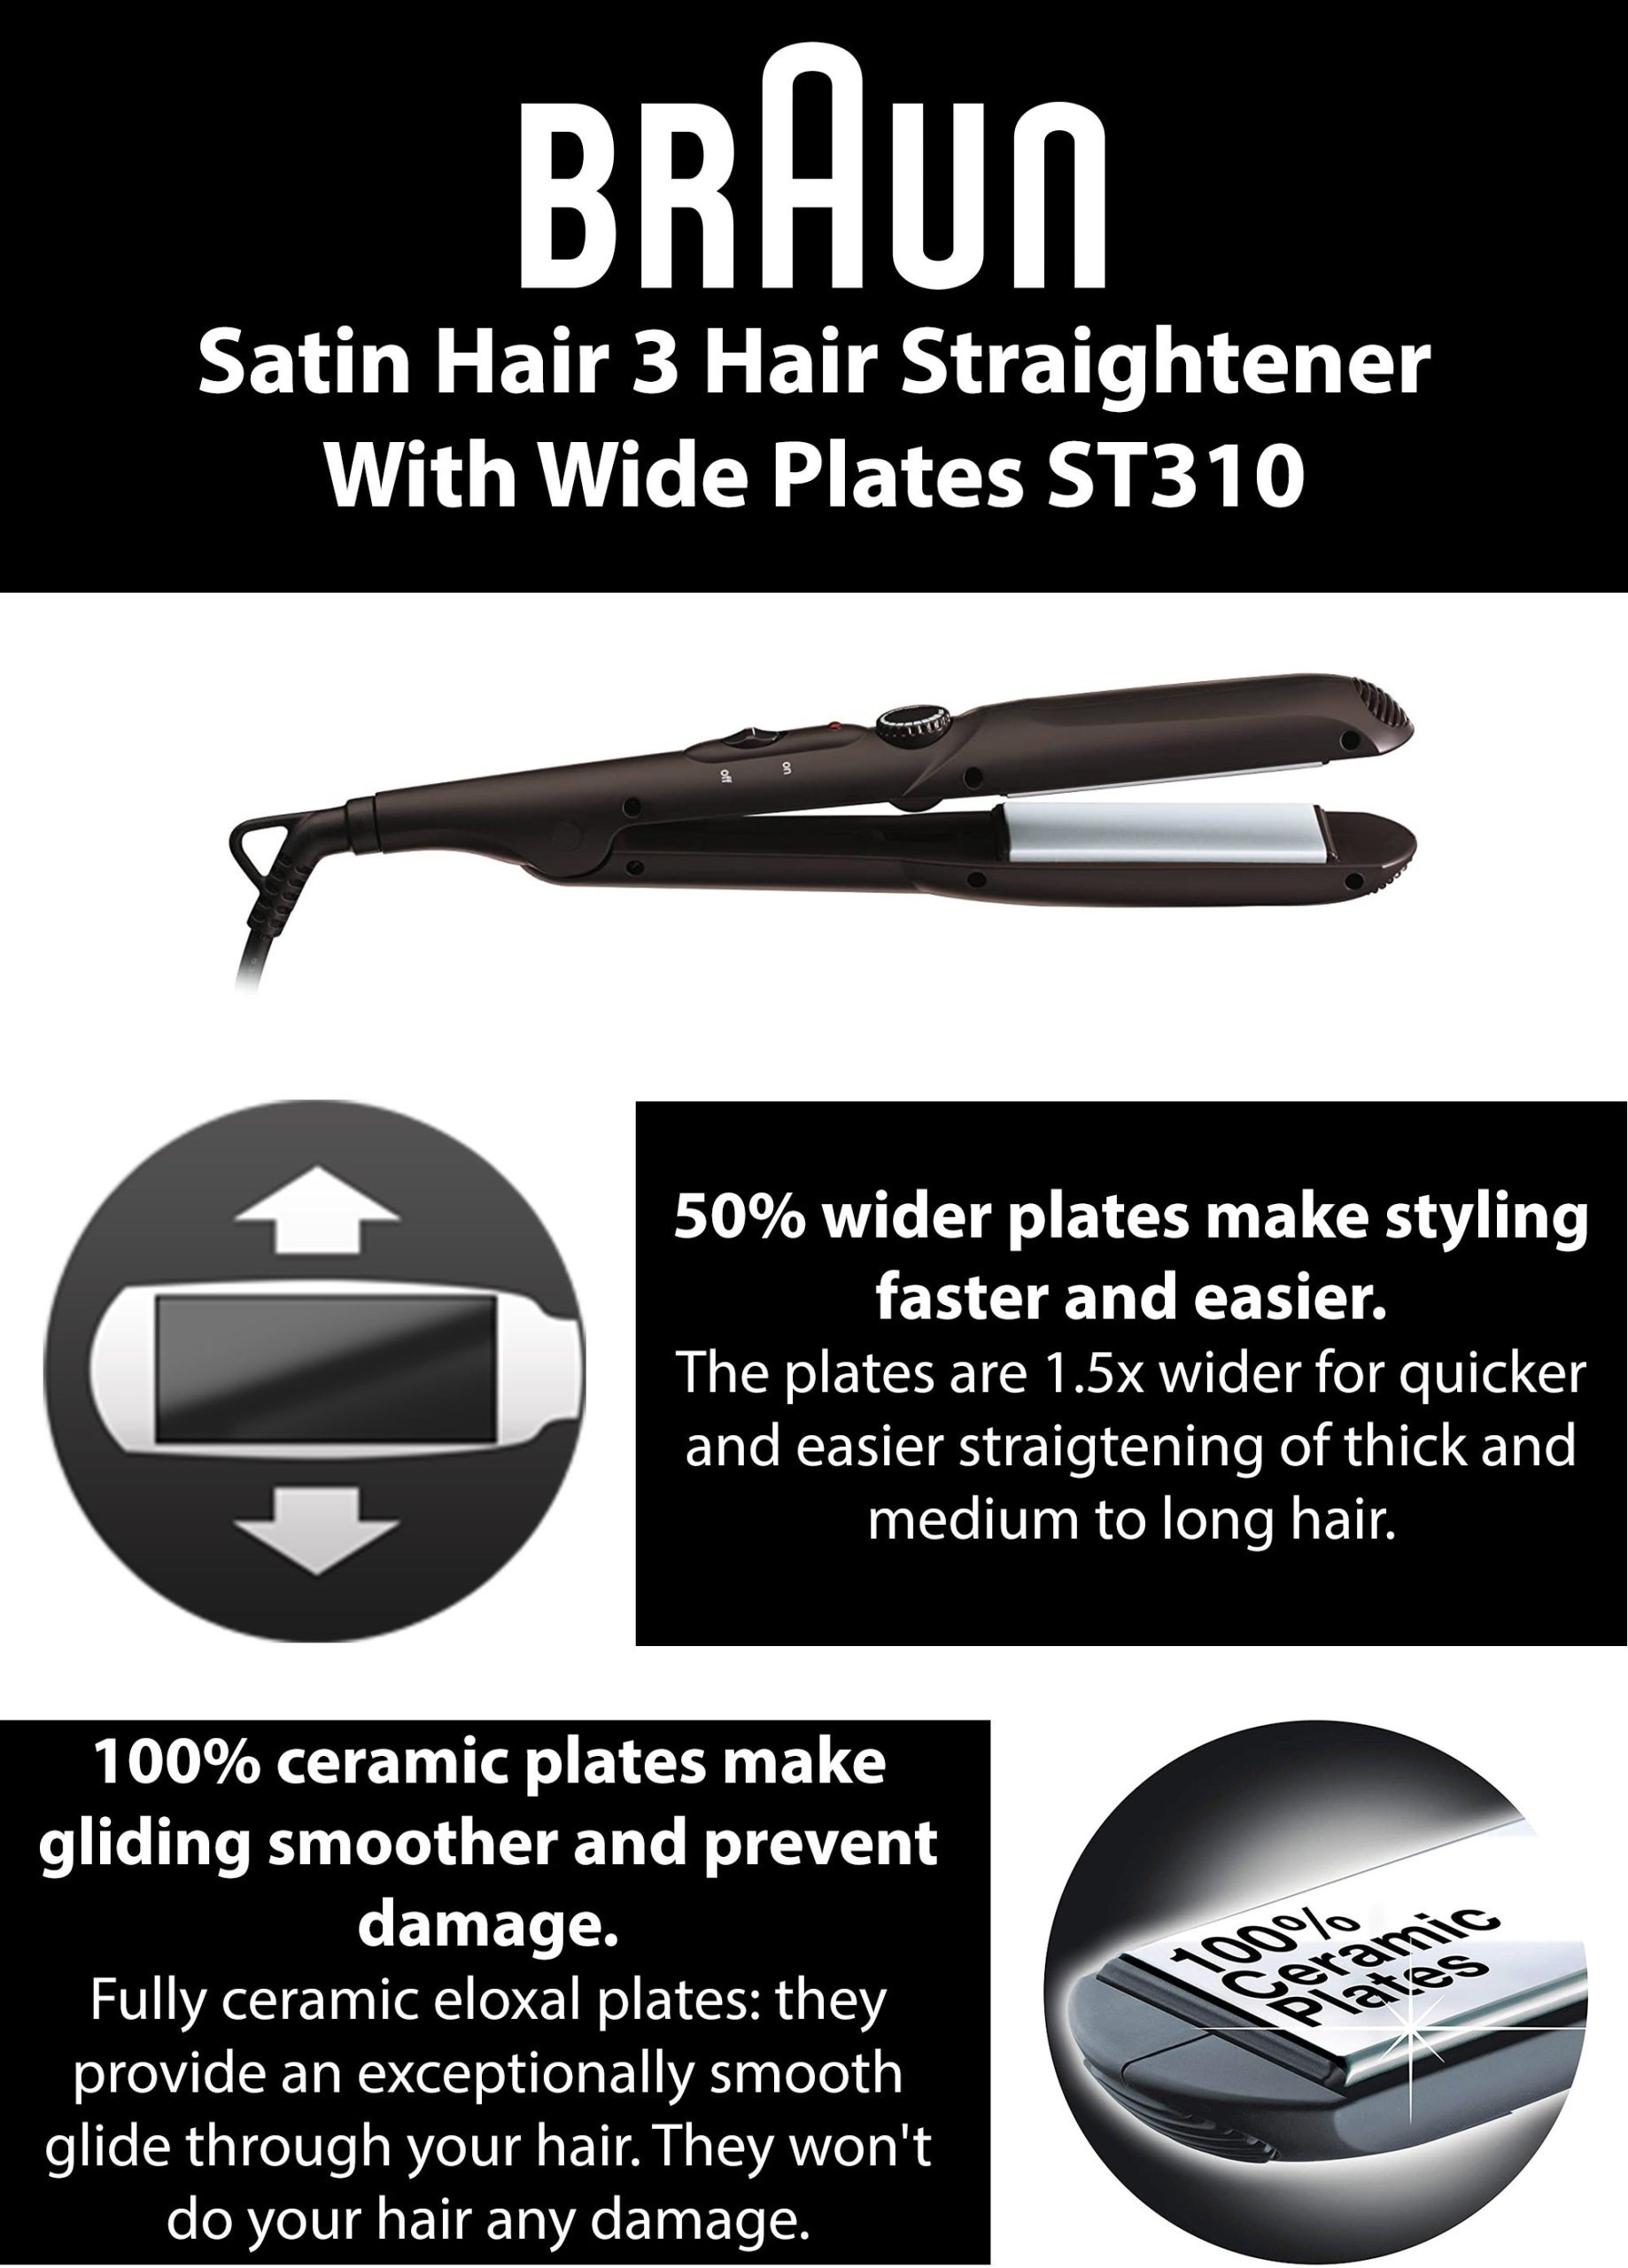 Braun Satin Hair 3 Hair Straightener With Wide Plates - ST310